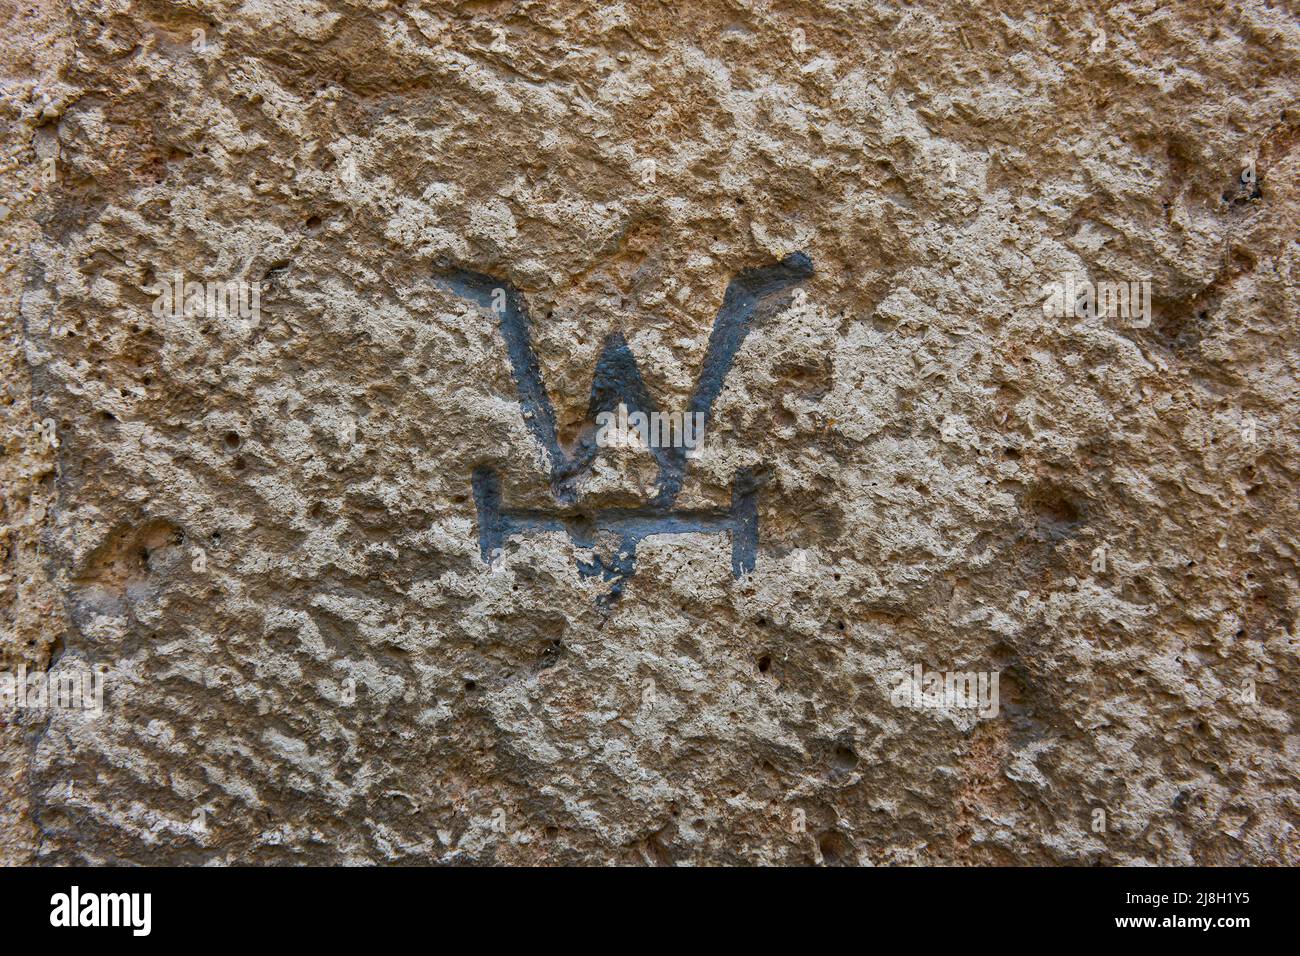 Steinmetzmarke auf den Ascharen des Tenorio-Turms. Erzbischöflicher Palast von Alcala de Henares, Region Madrid, Spanien. Stockfoto